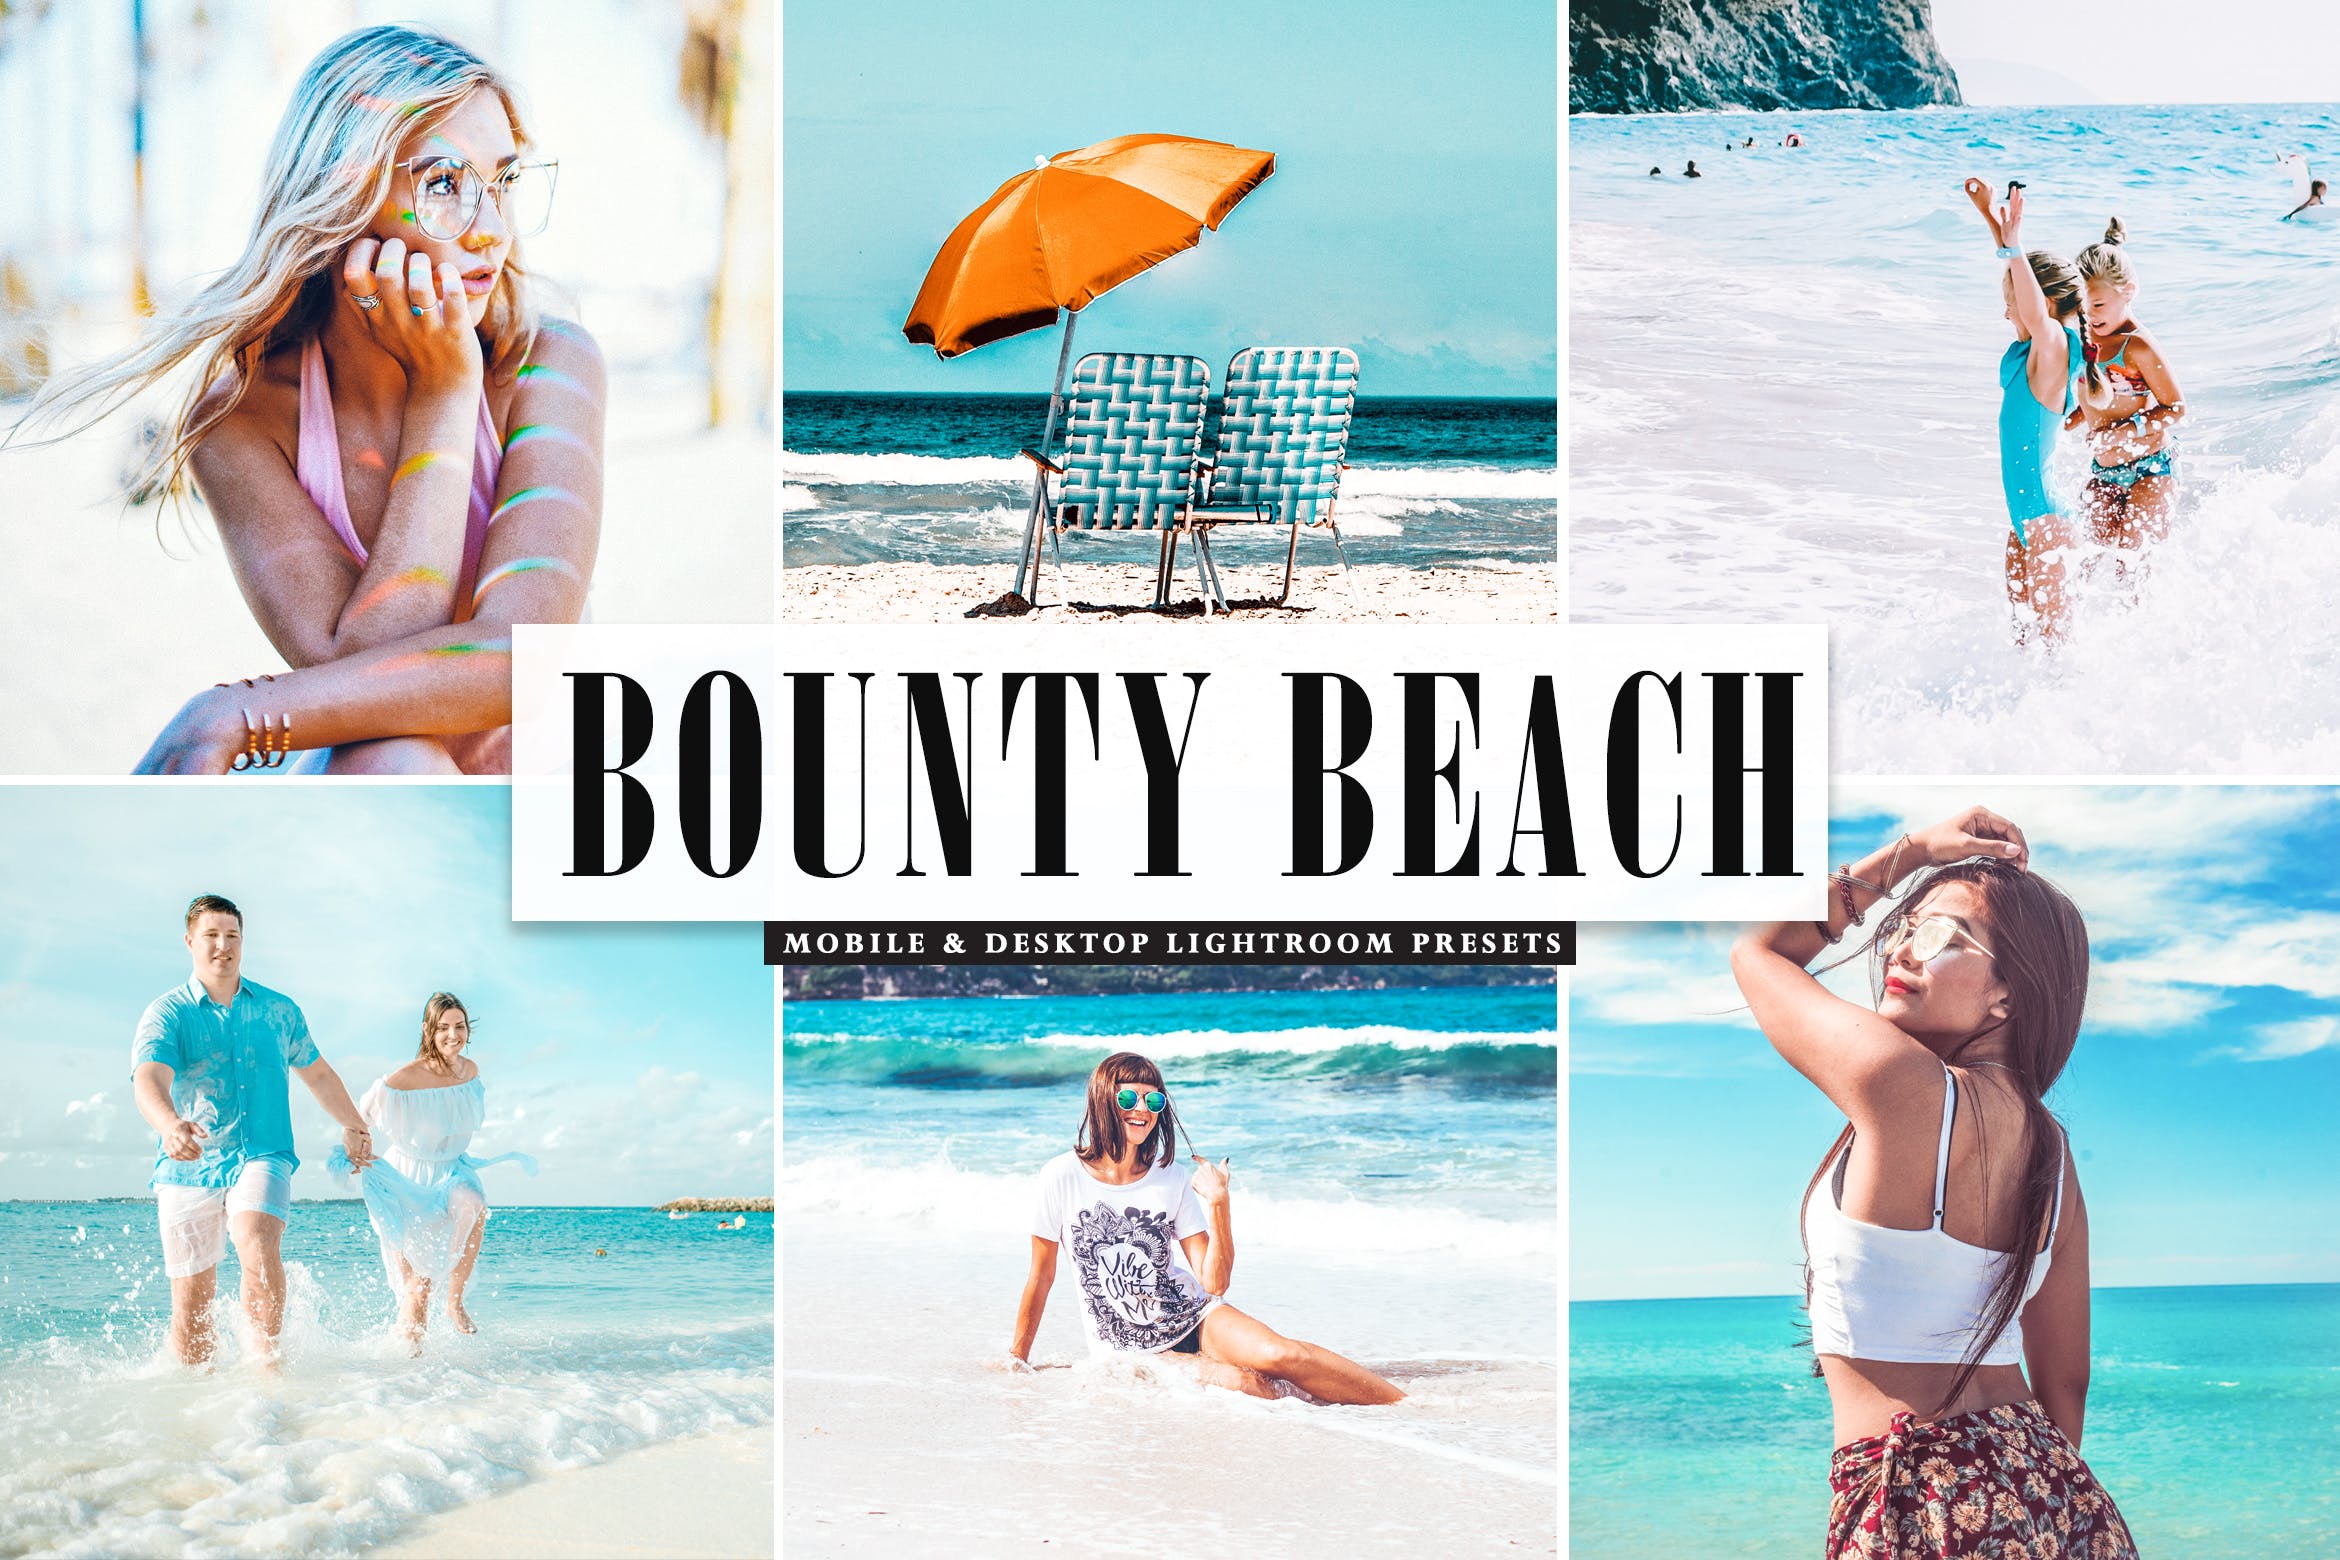 海滩人像摄影活力亮色LR调色预设下载 Bounty Beach Mobile & Desktop Lightroom Presets插图